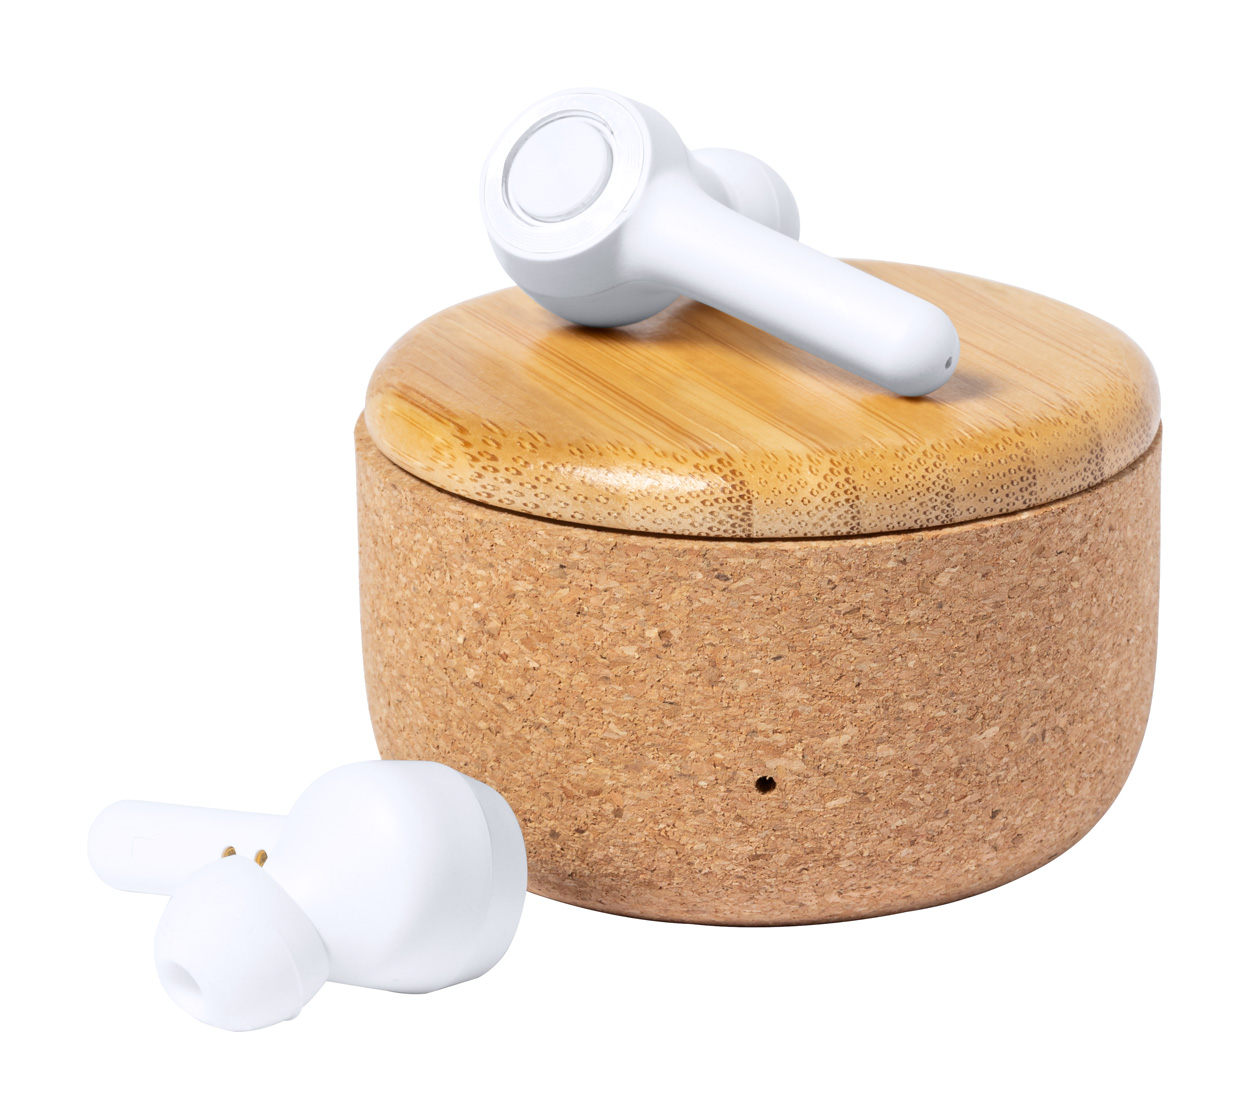 Bezdrátová sluchátka GRIGAL v krabičce z korku a bambusu - přírodní